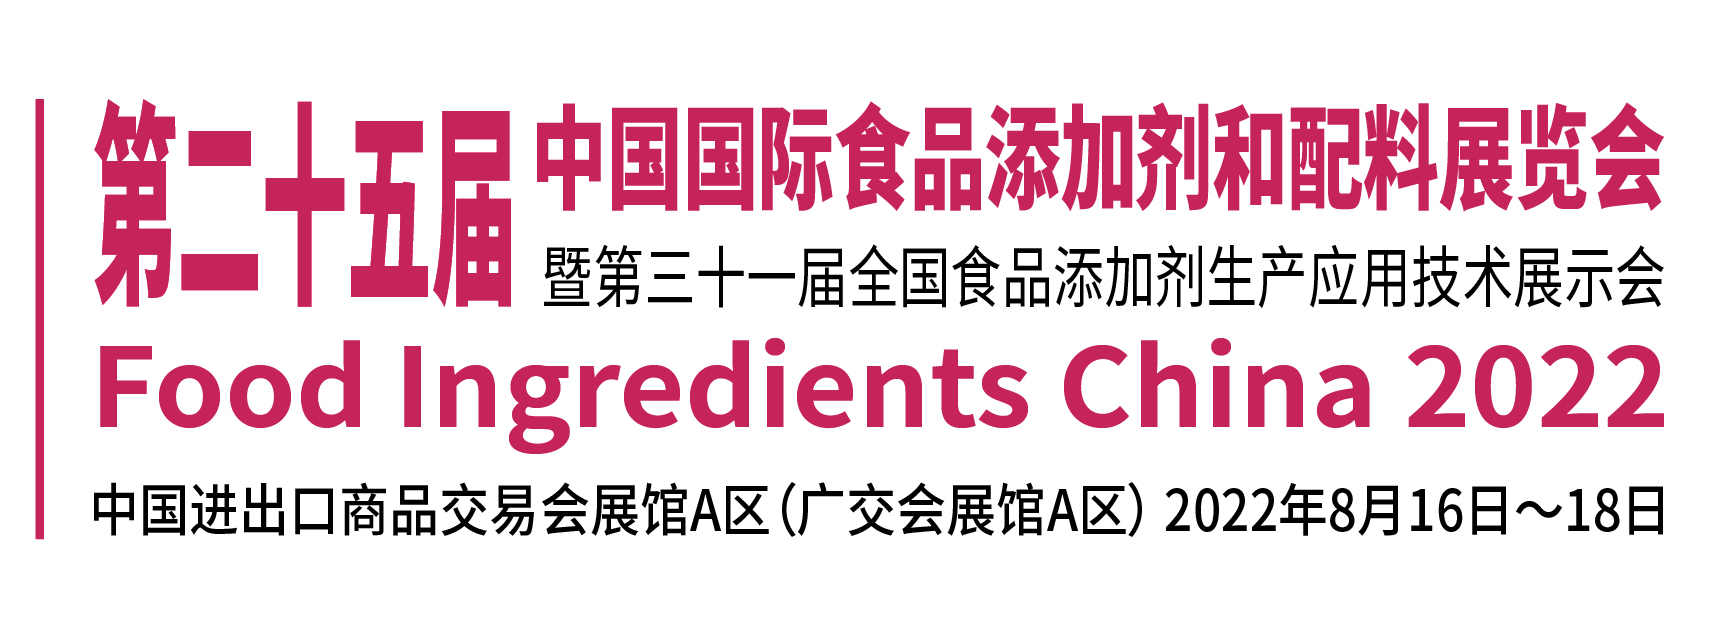 第二十五届中国国际食品添加剂和配料展览会暨第三十一届全国食品添加剂生产应用技术展示会